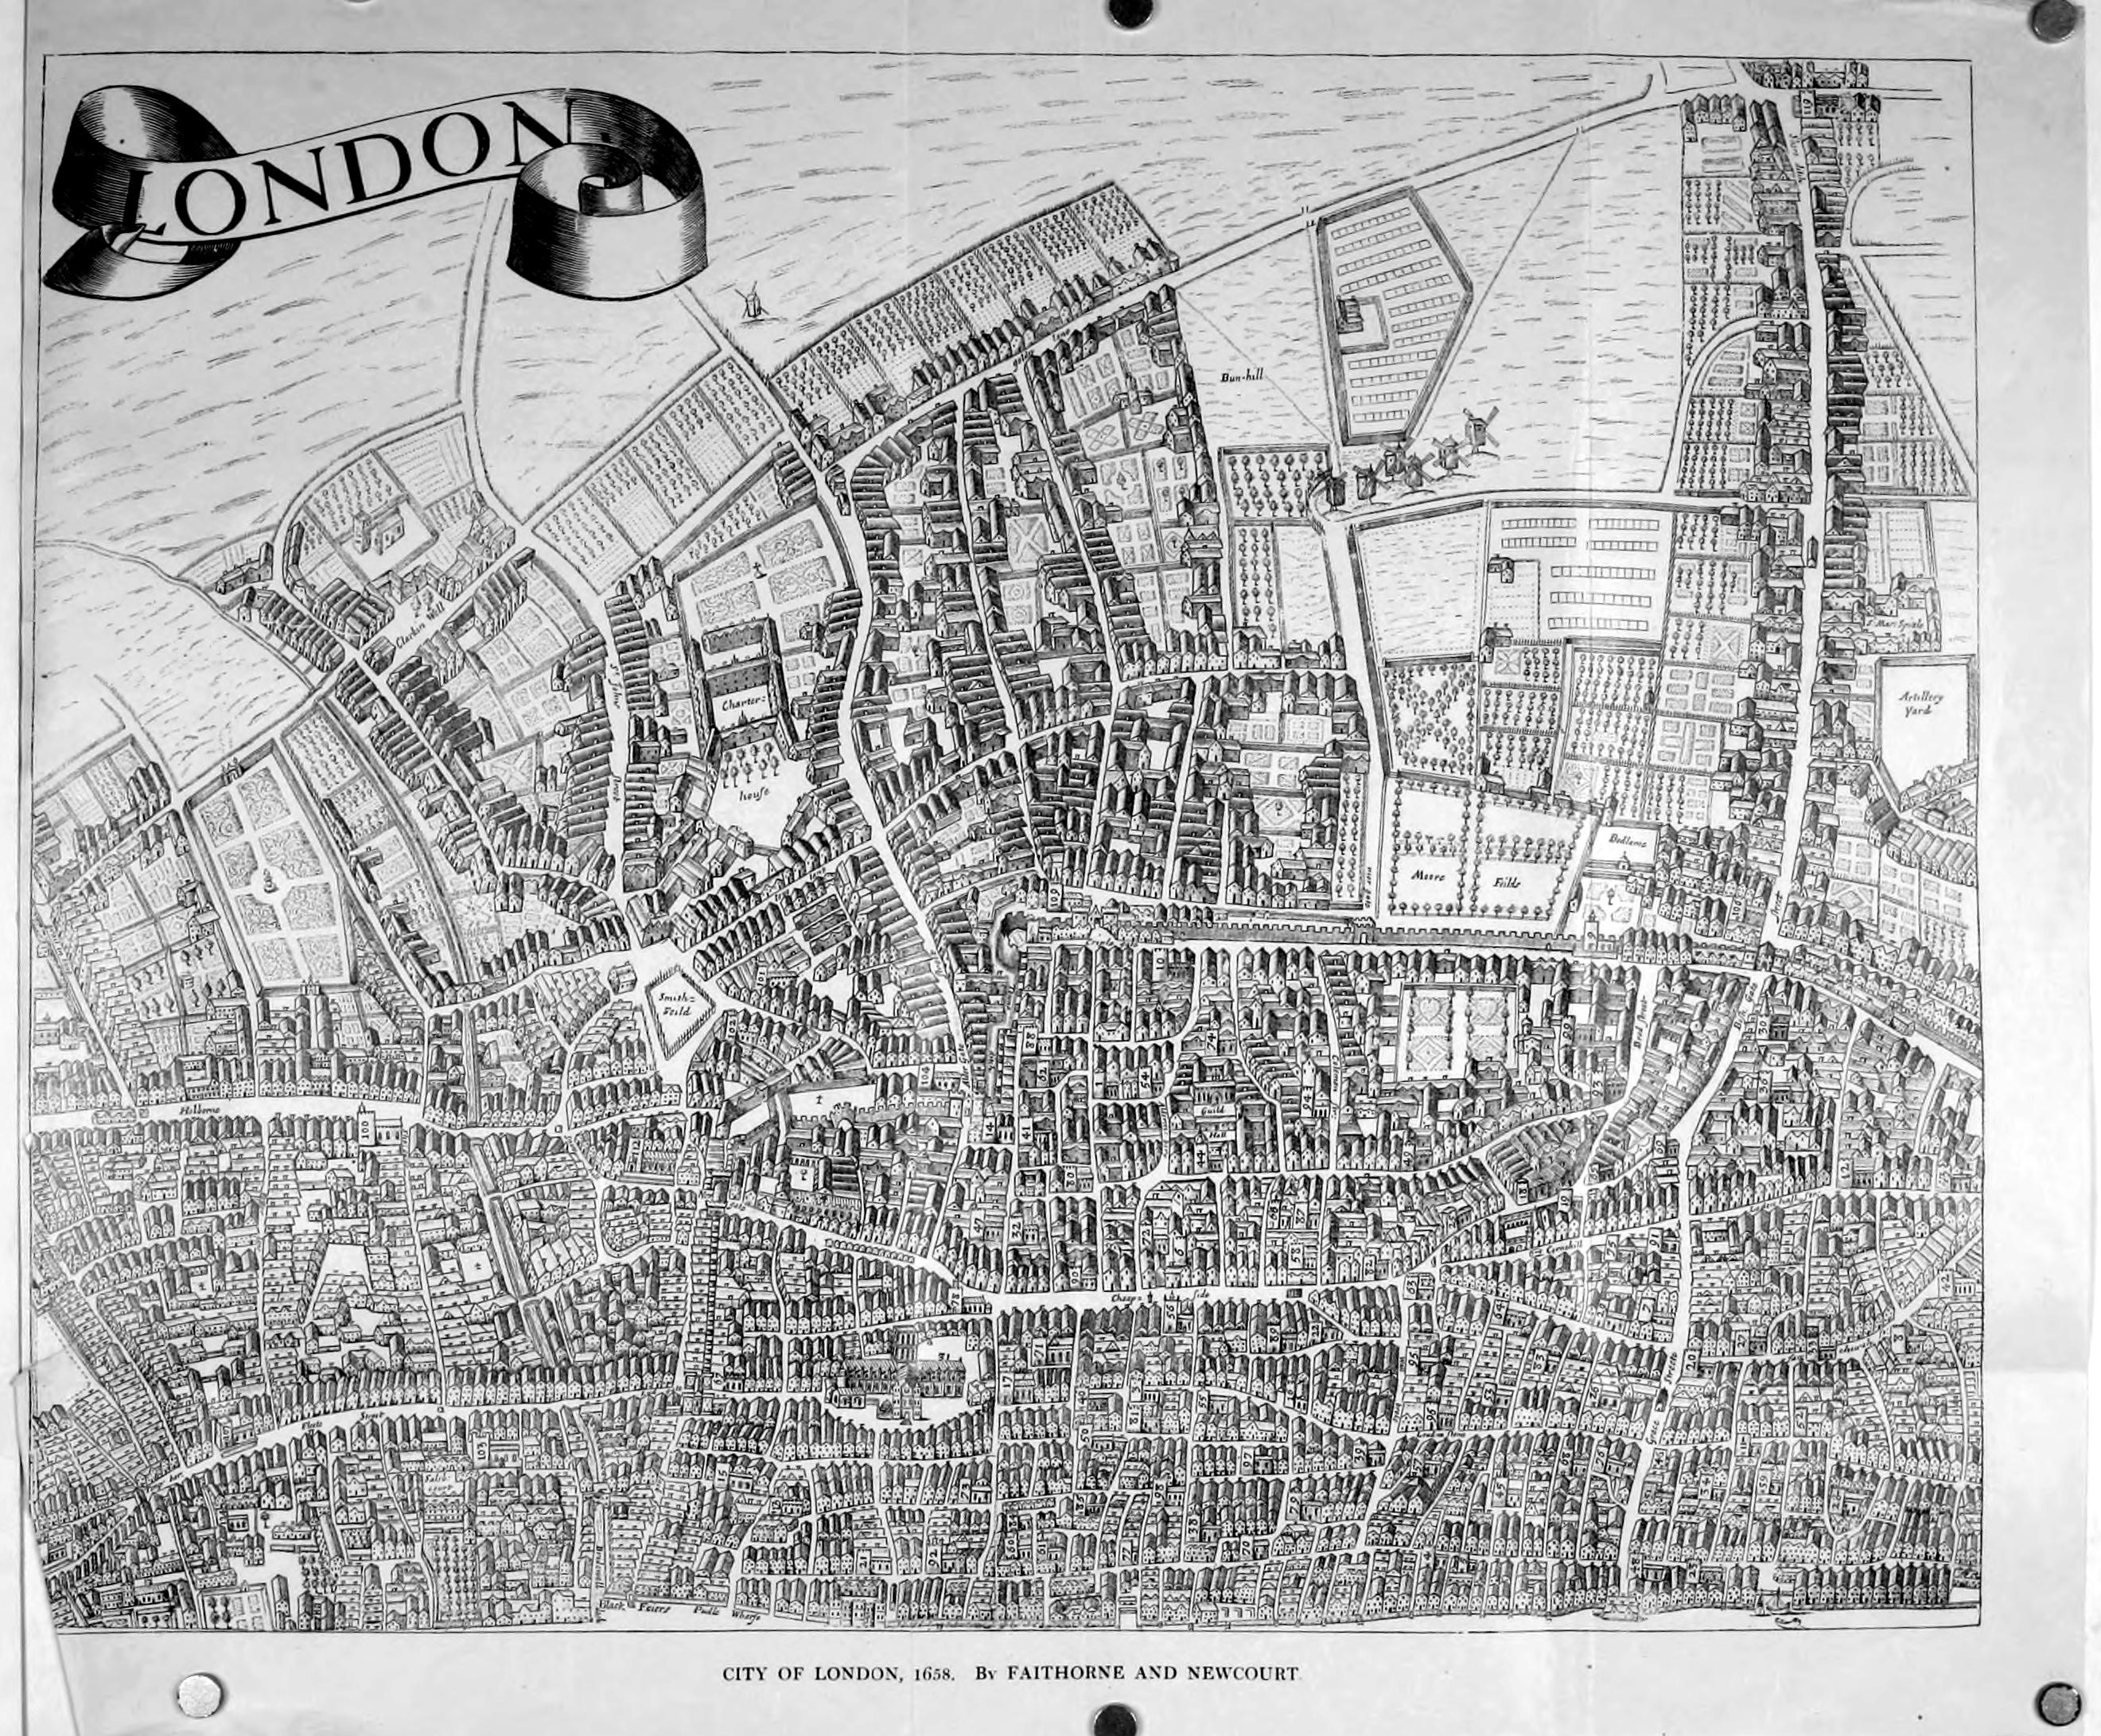 William Faithorne’s 1658 map of London. Image courtesy of Wikimedia Commons.